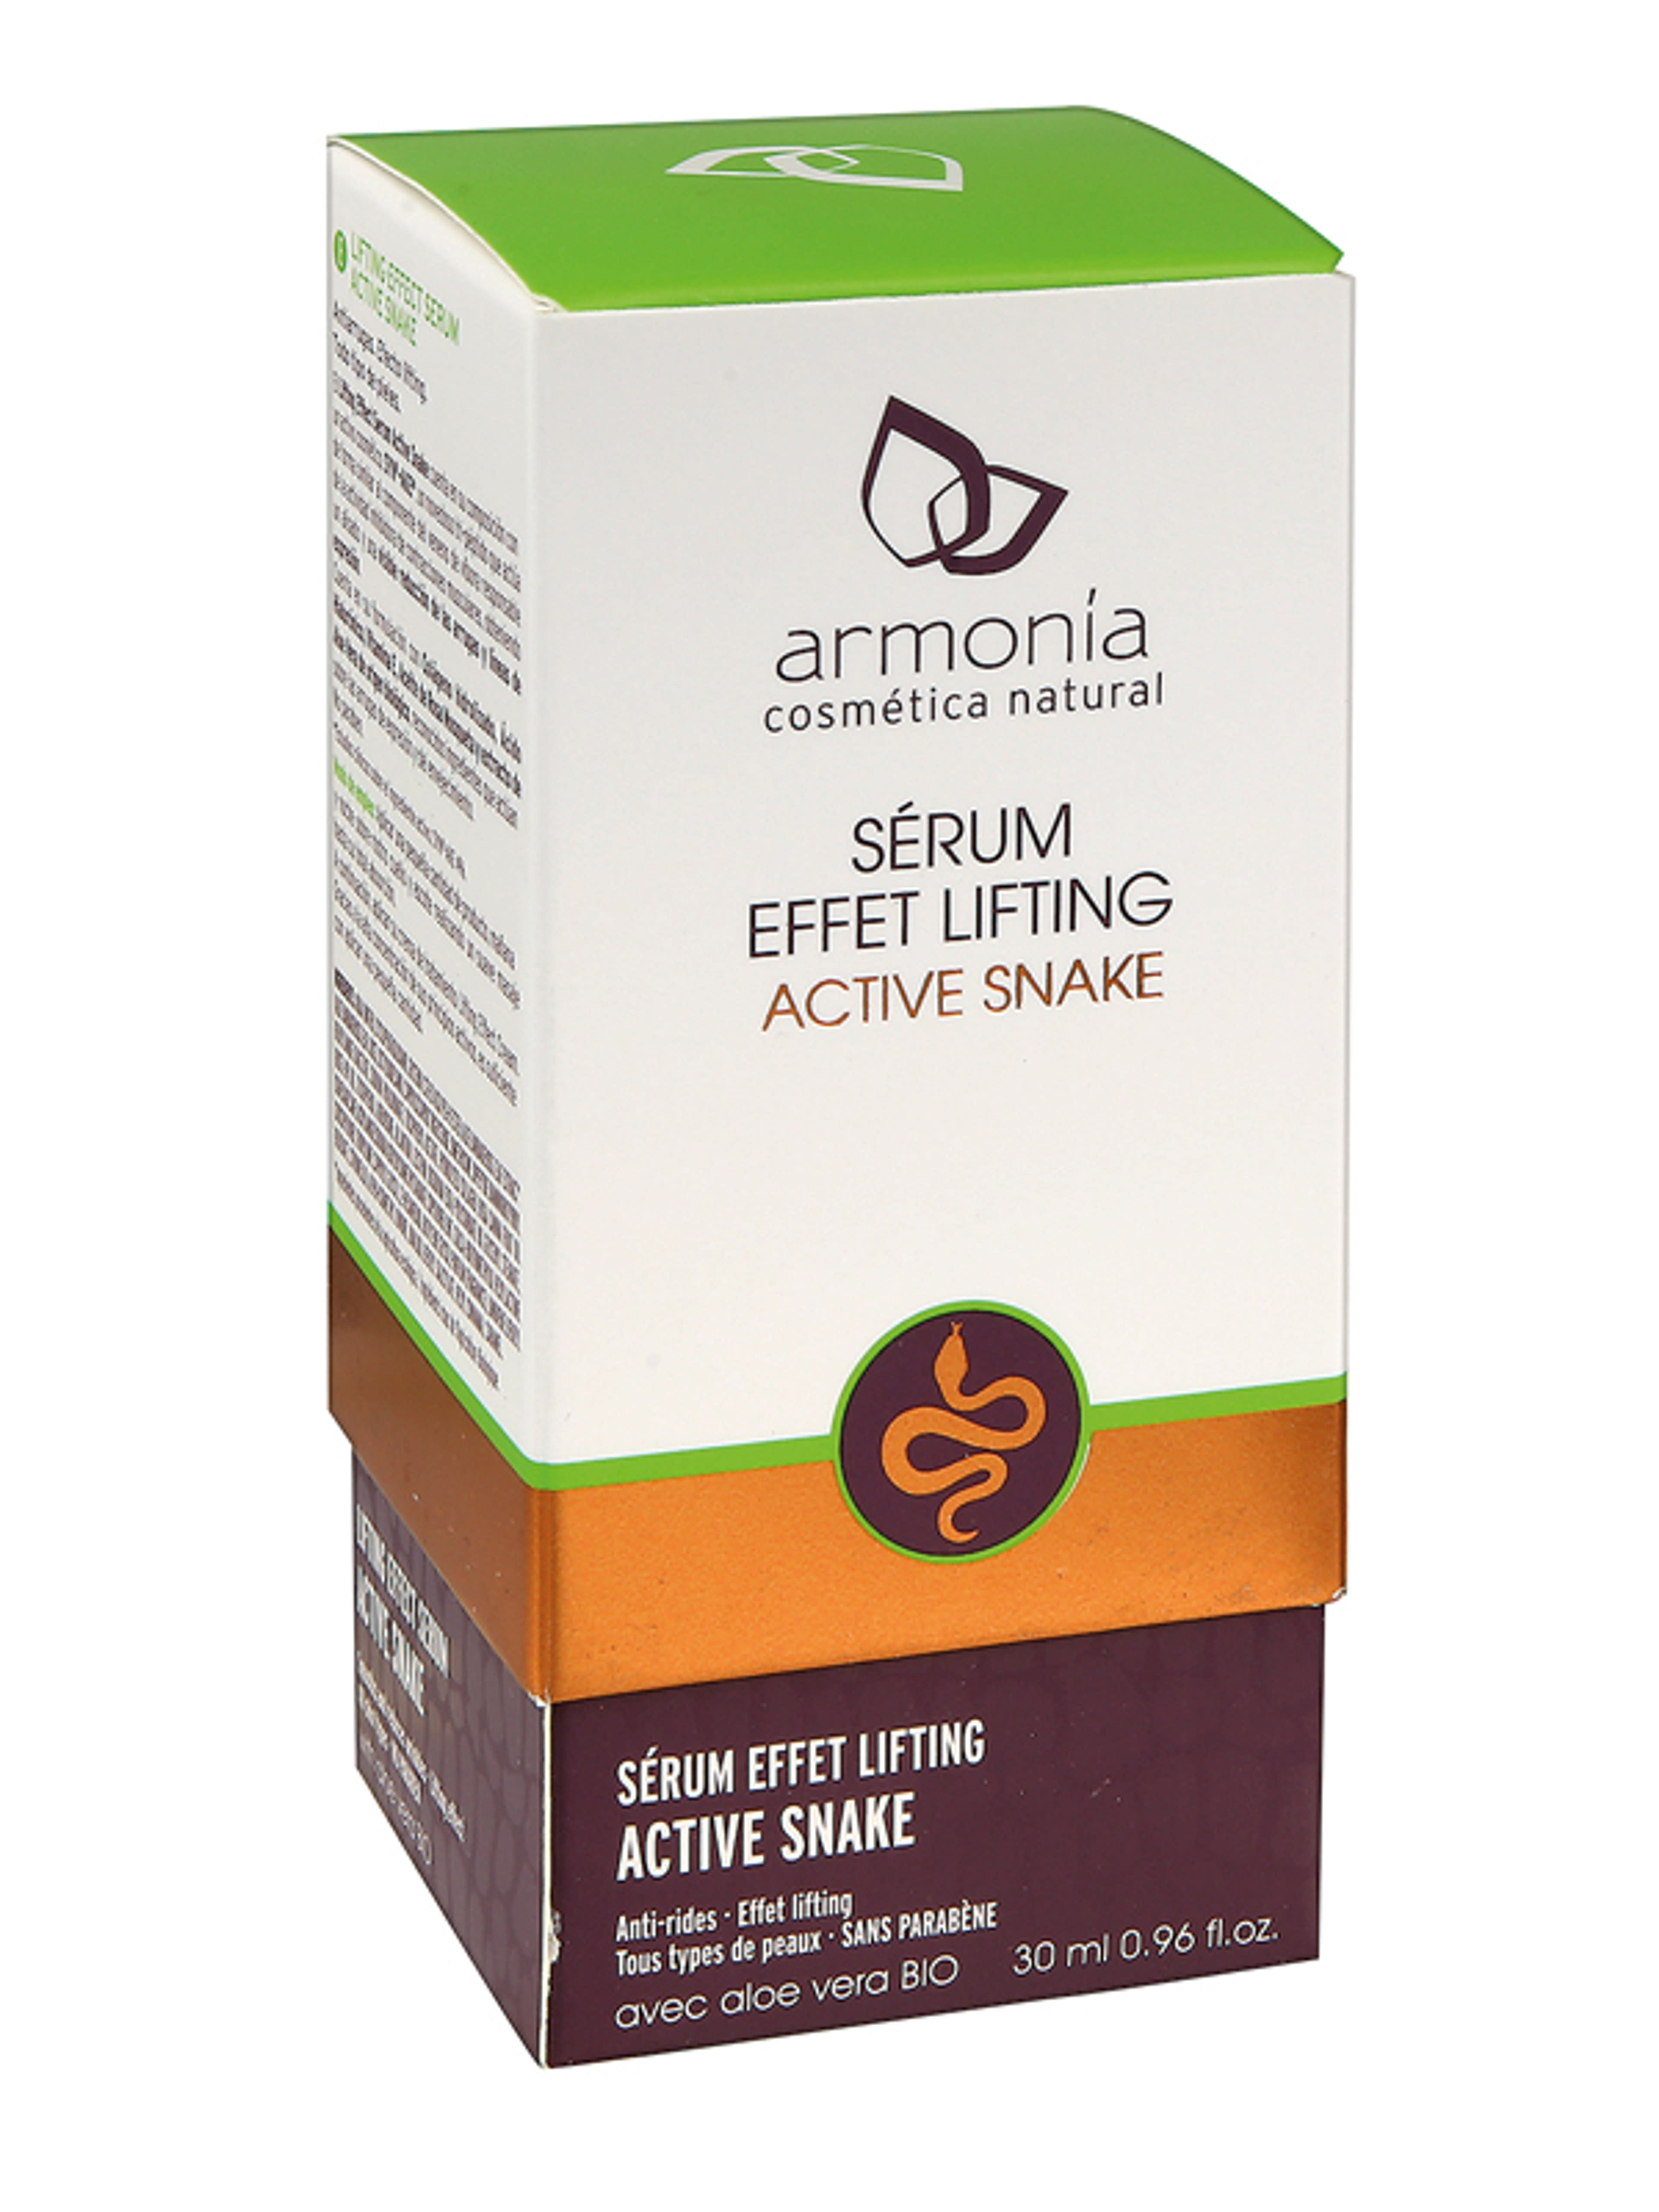 Armonia Active Snake kígyóméreg erős lifting hatású, ránckisimító szérum - 30 ml-1